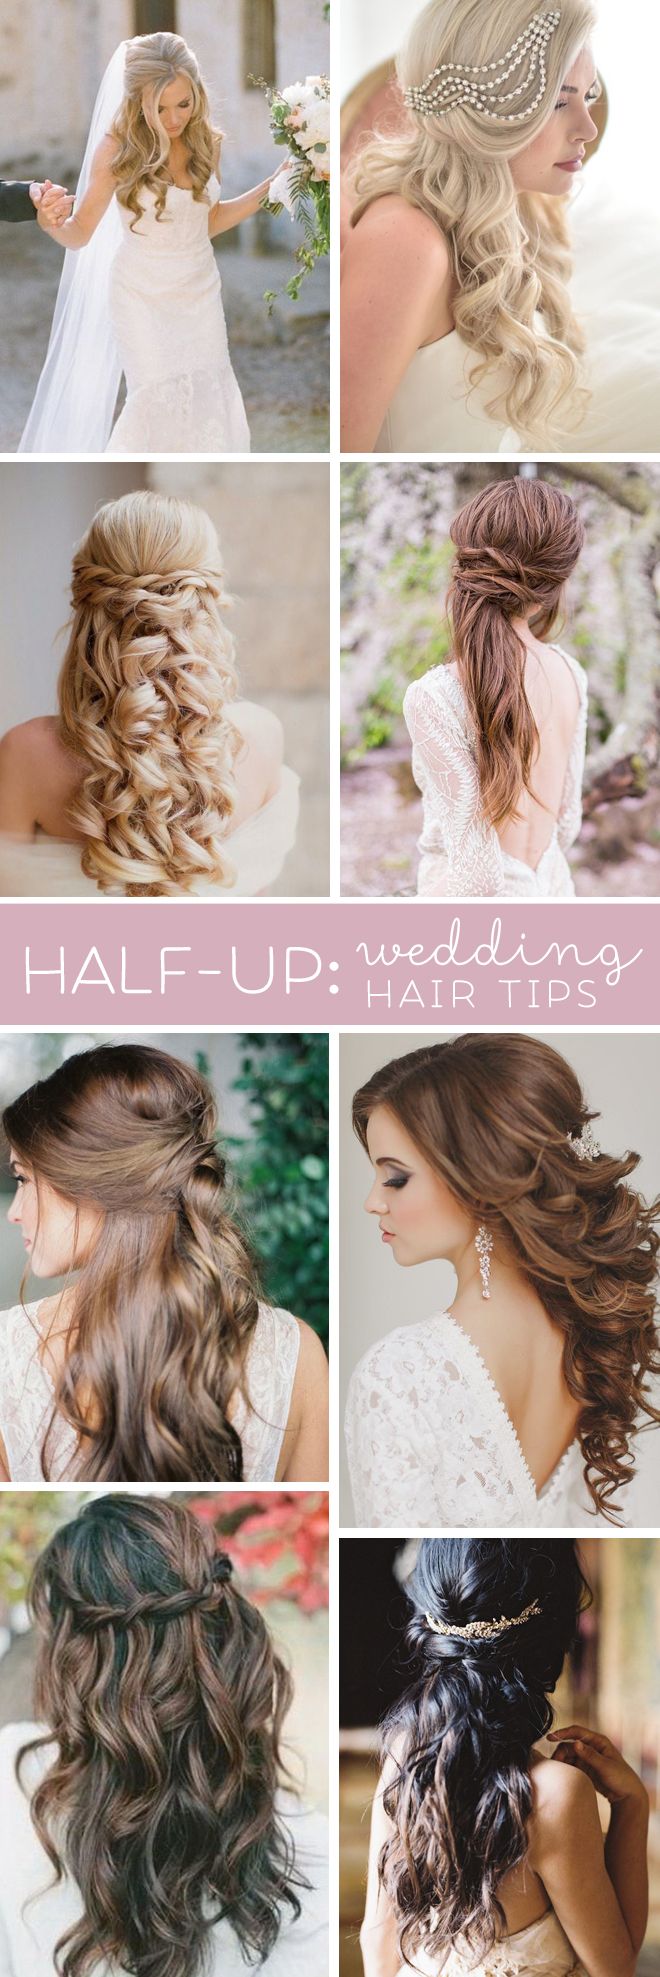 23 Stunning Half Up Half Down Wedding Hairstyles - Pretty ...